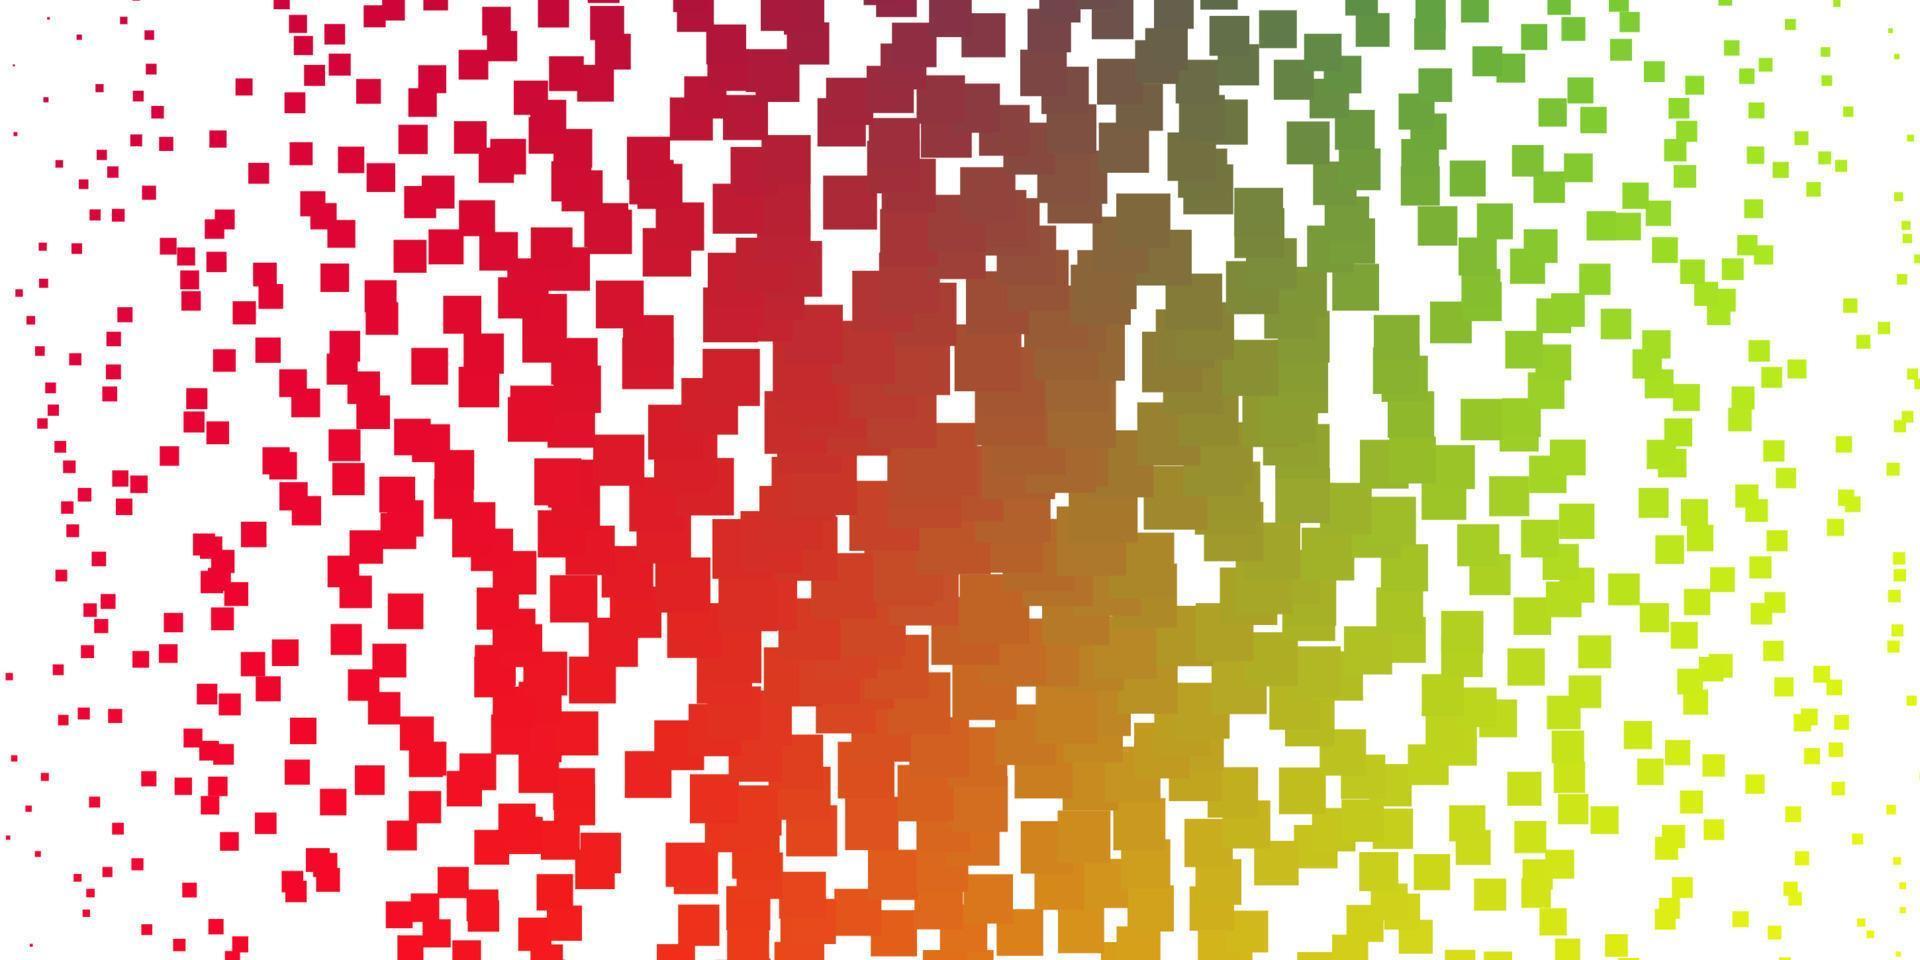 luz de fundo multicolor vector com retângulos.